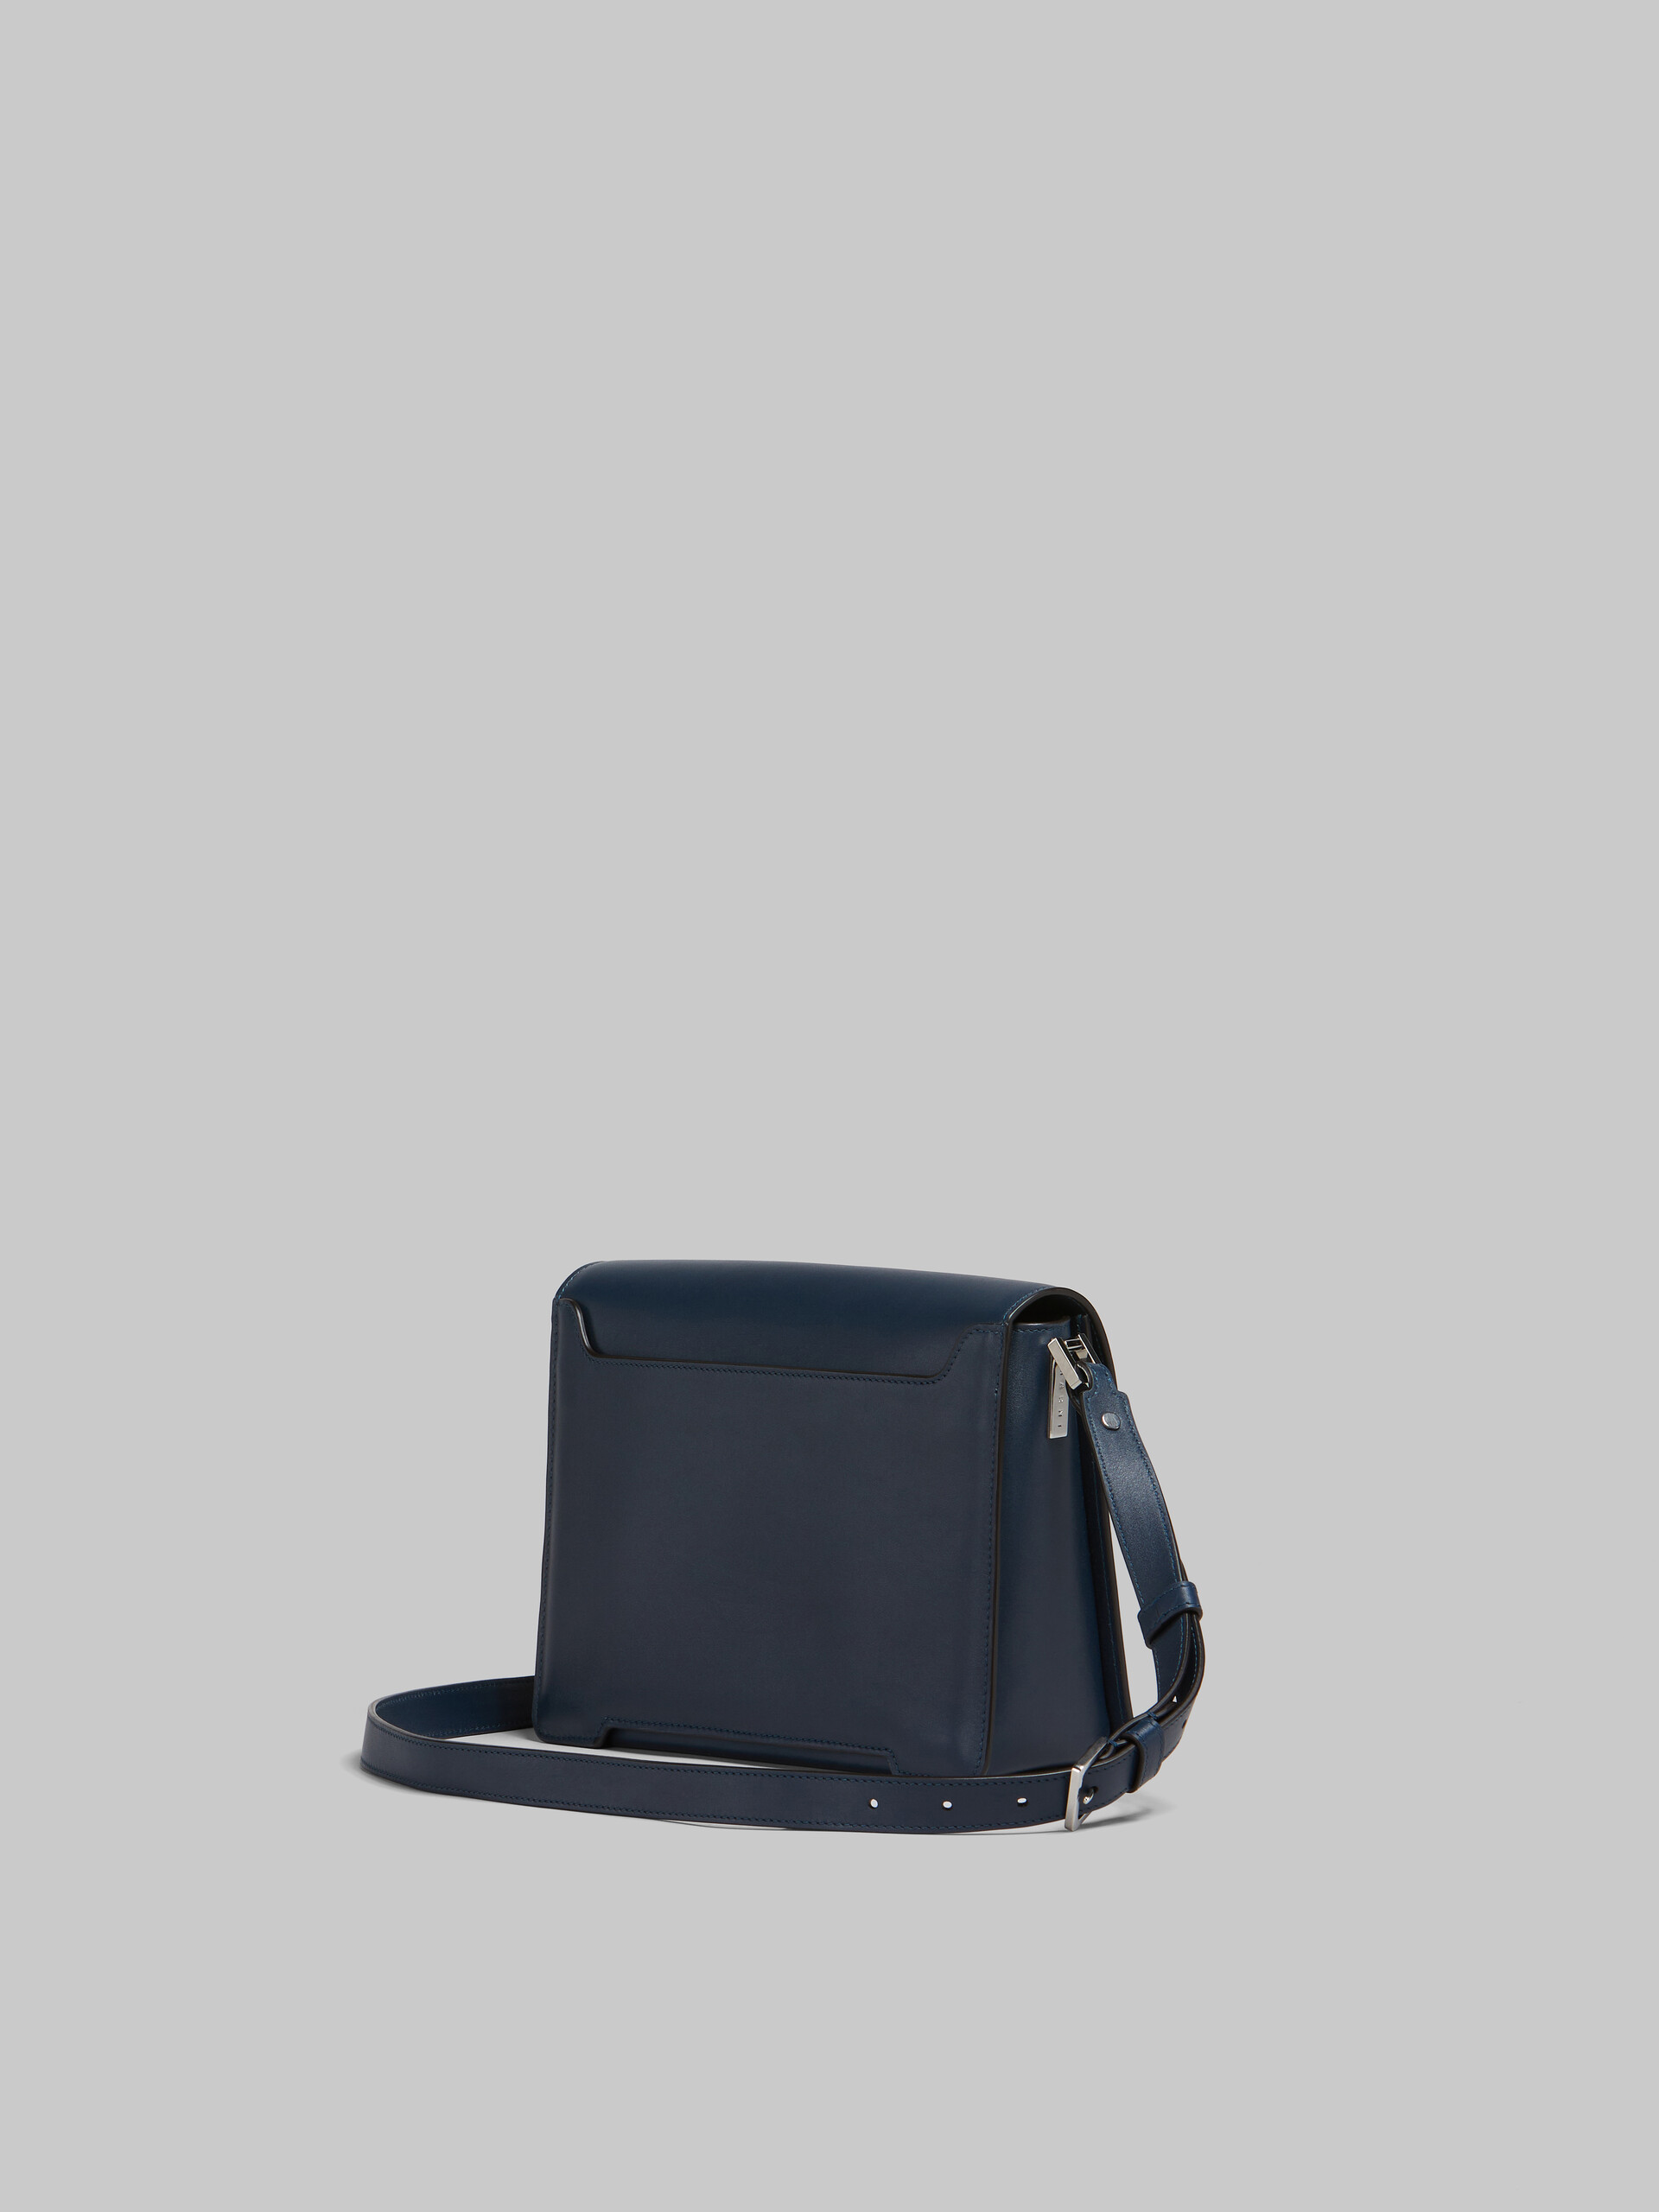 Deep blue leather Trunkaroo medium shoulder bag - Shoulder Bags - Image 3